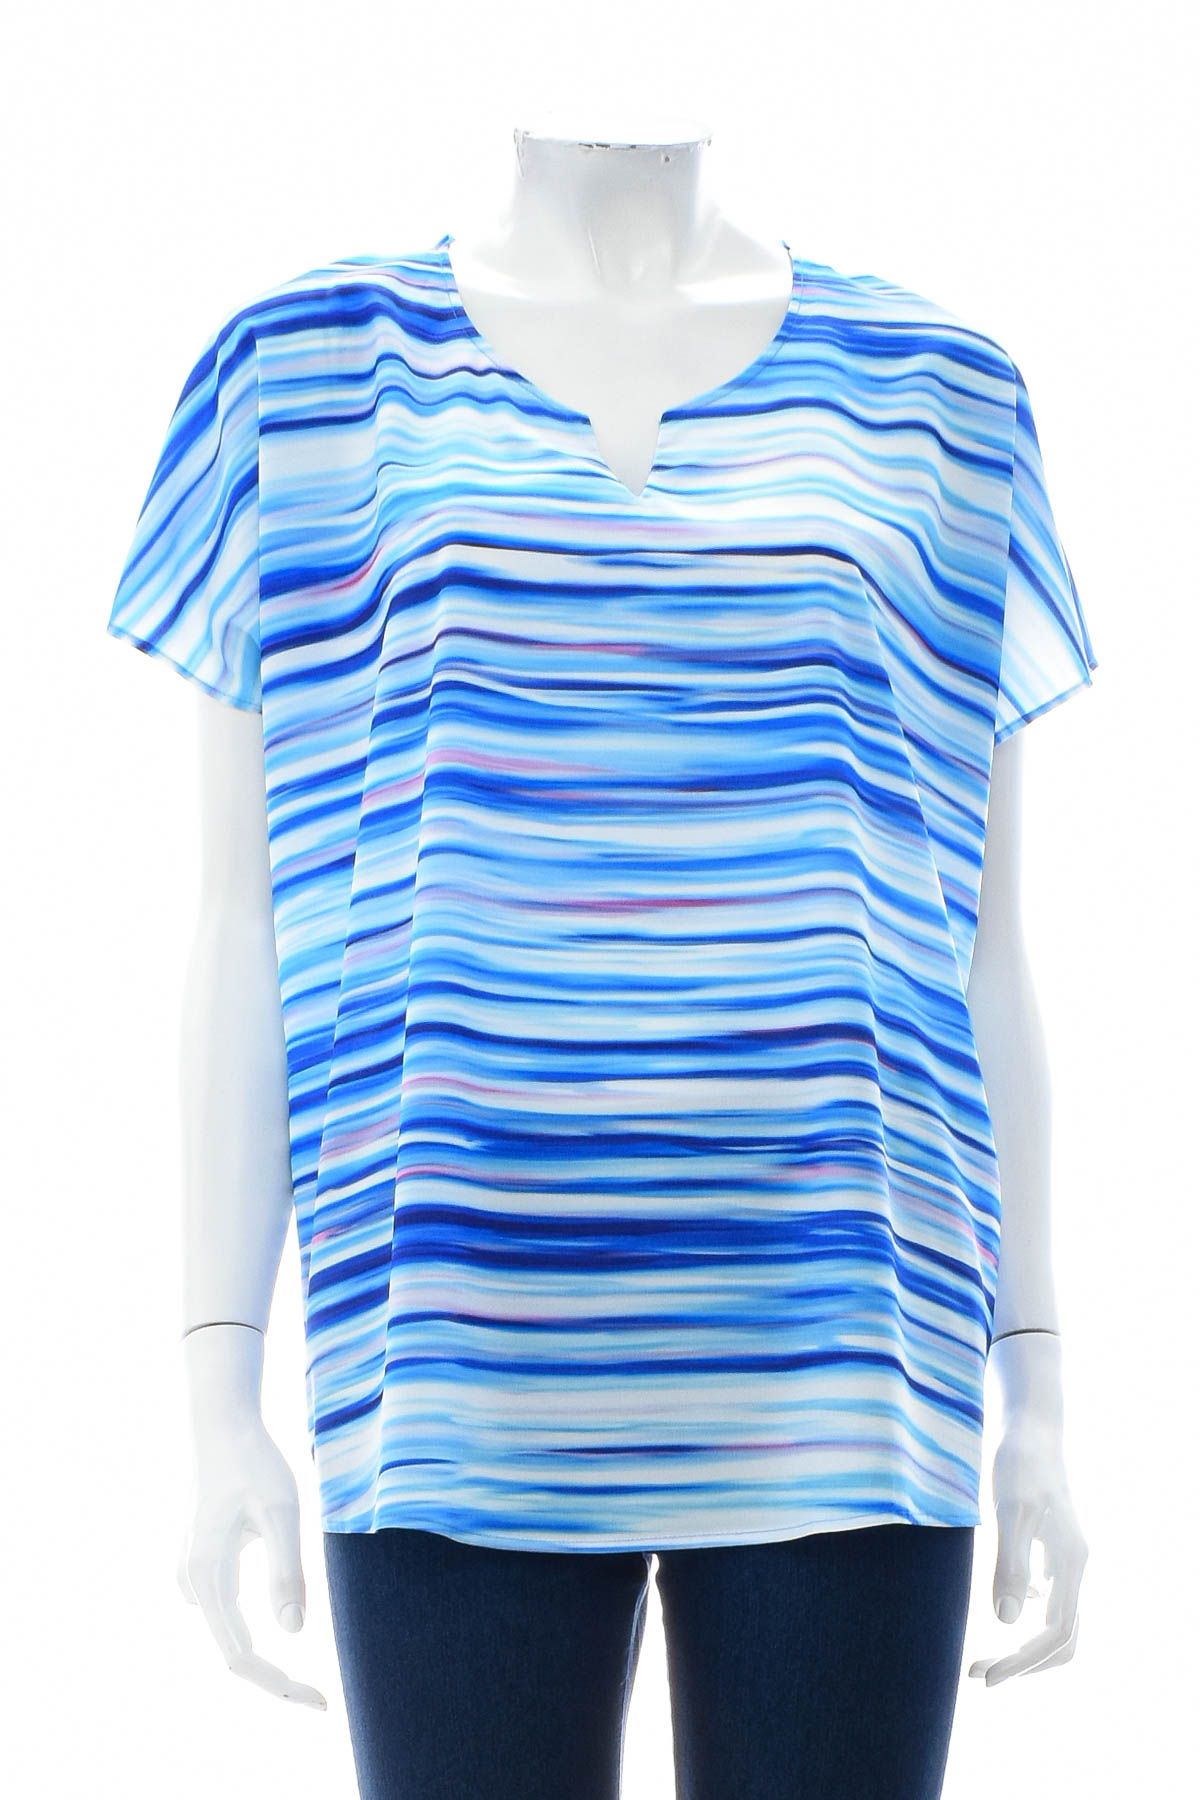 Γυναικείо πουκάμισο - Fiora Blue - 0